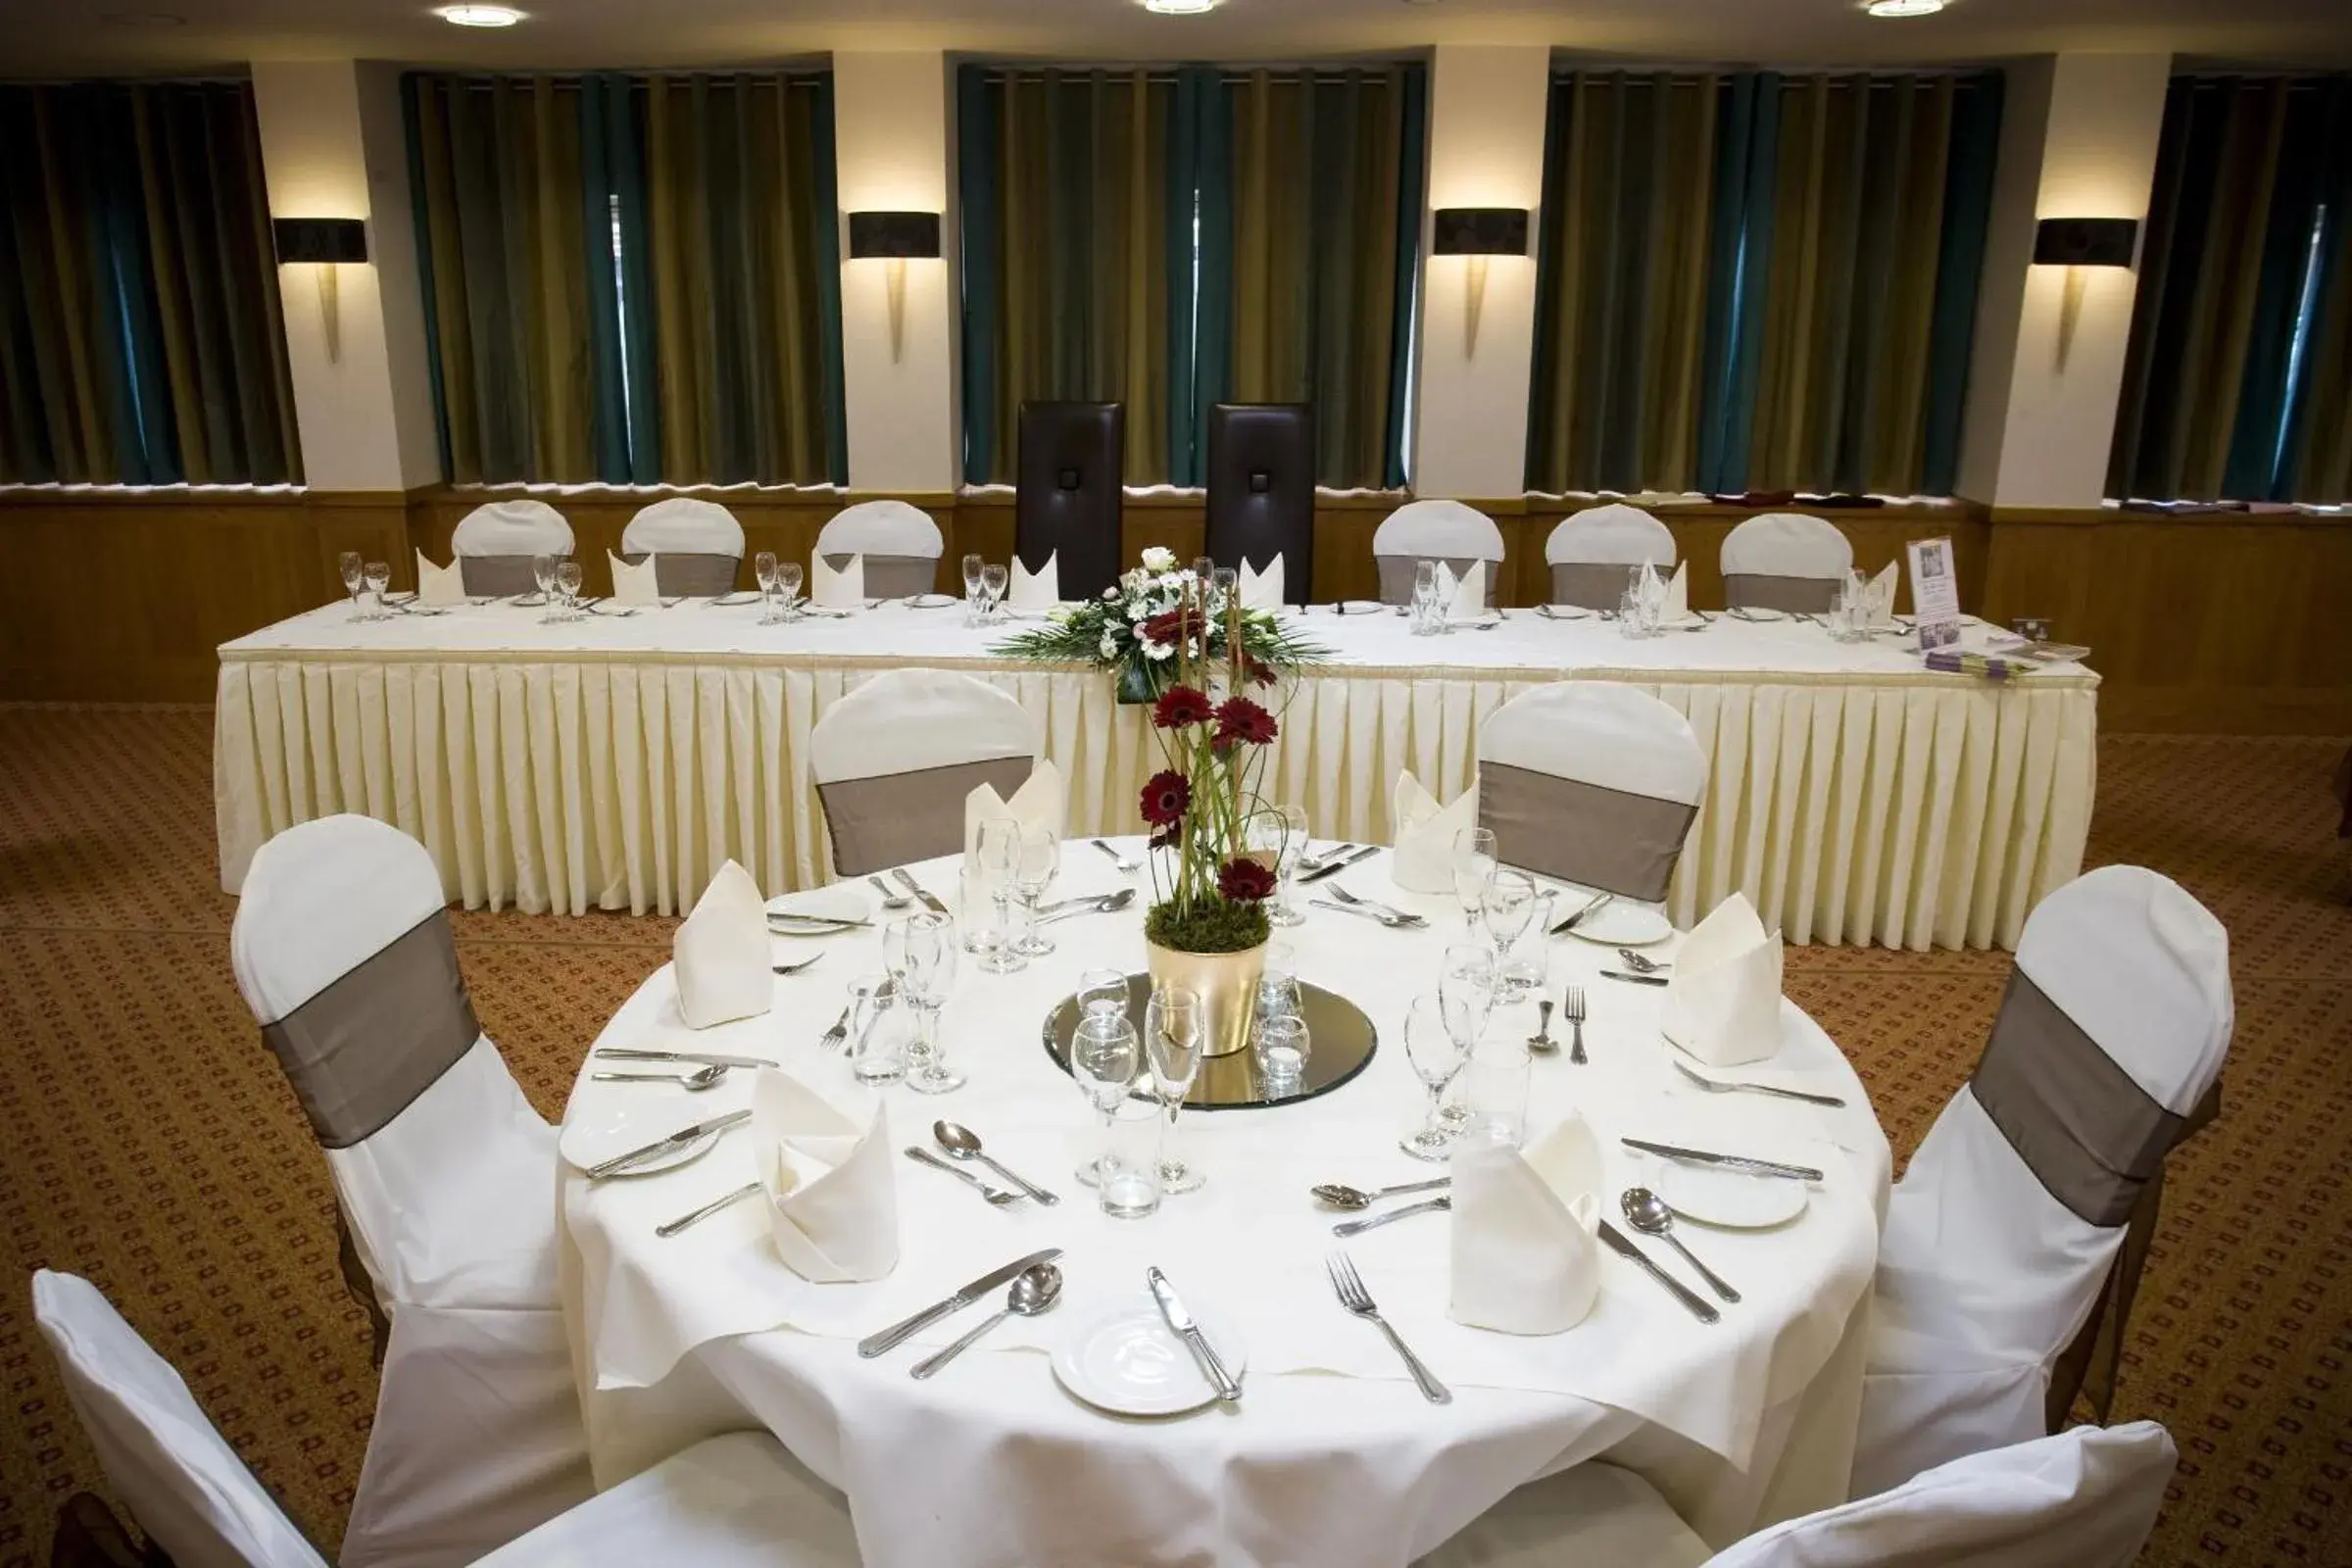 Banquet/Function facilities, Banquet Facilities in Lea Marston Hotel